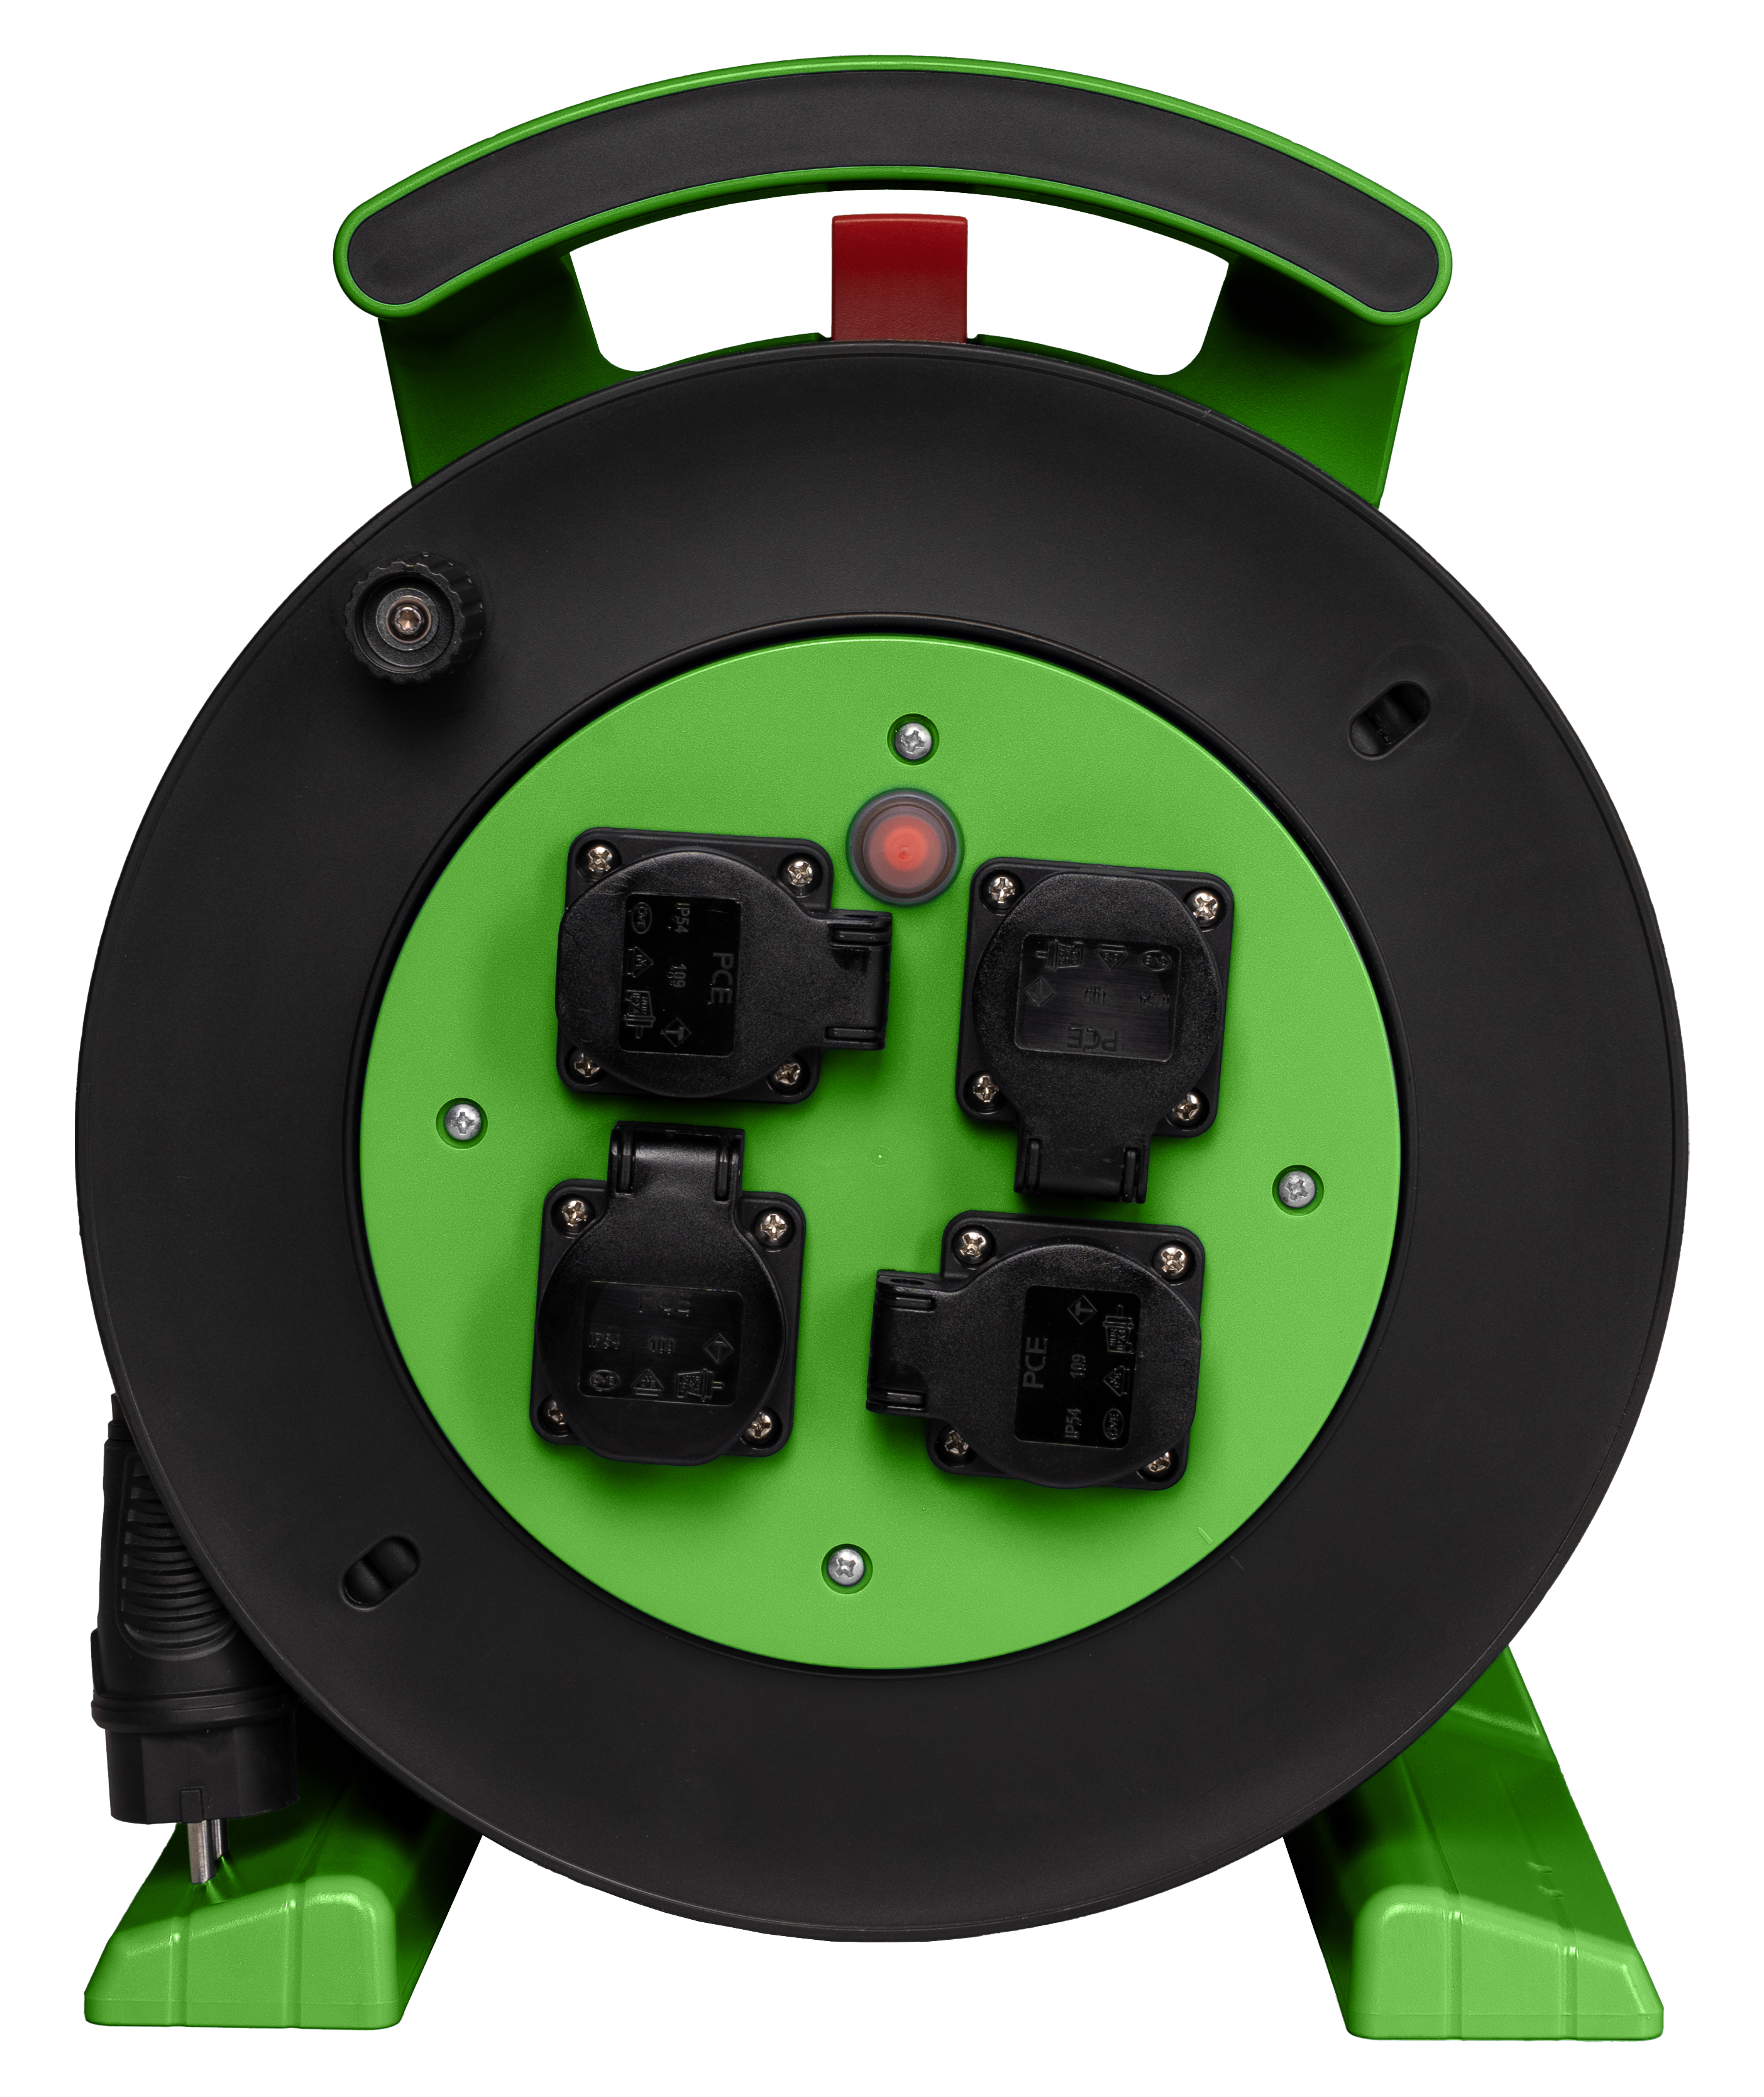 Kabeltrommel grün-schwarz, 4 x Schutzkontakt-Steckdose, H07RN-F 3 G 2,5 mm², 25 m JUMBO L 2.0